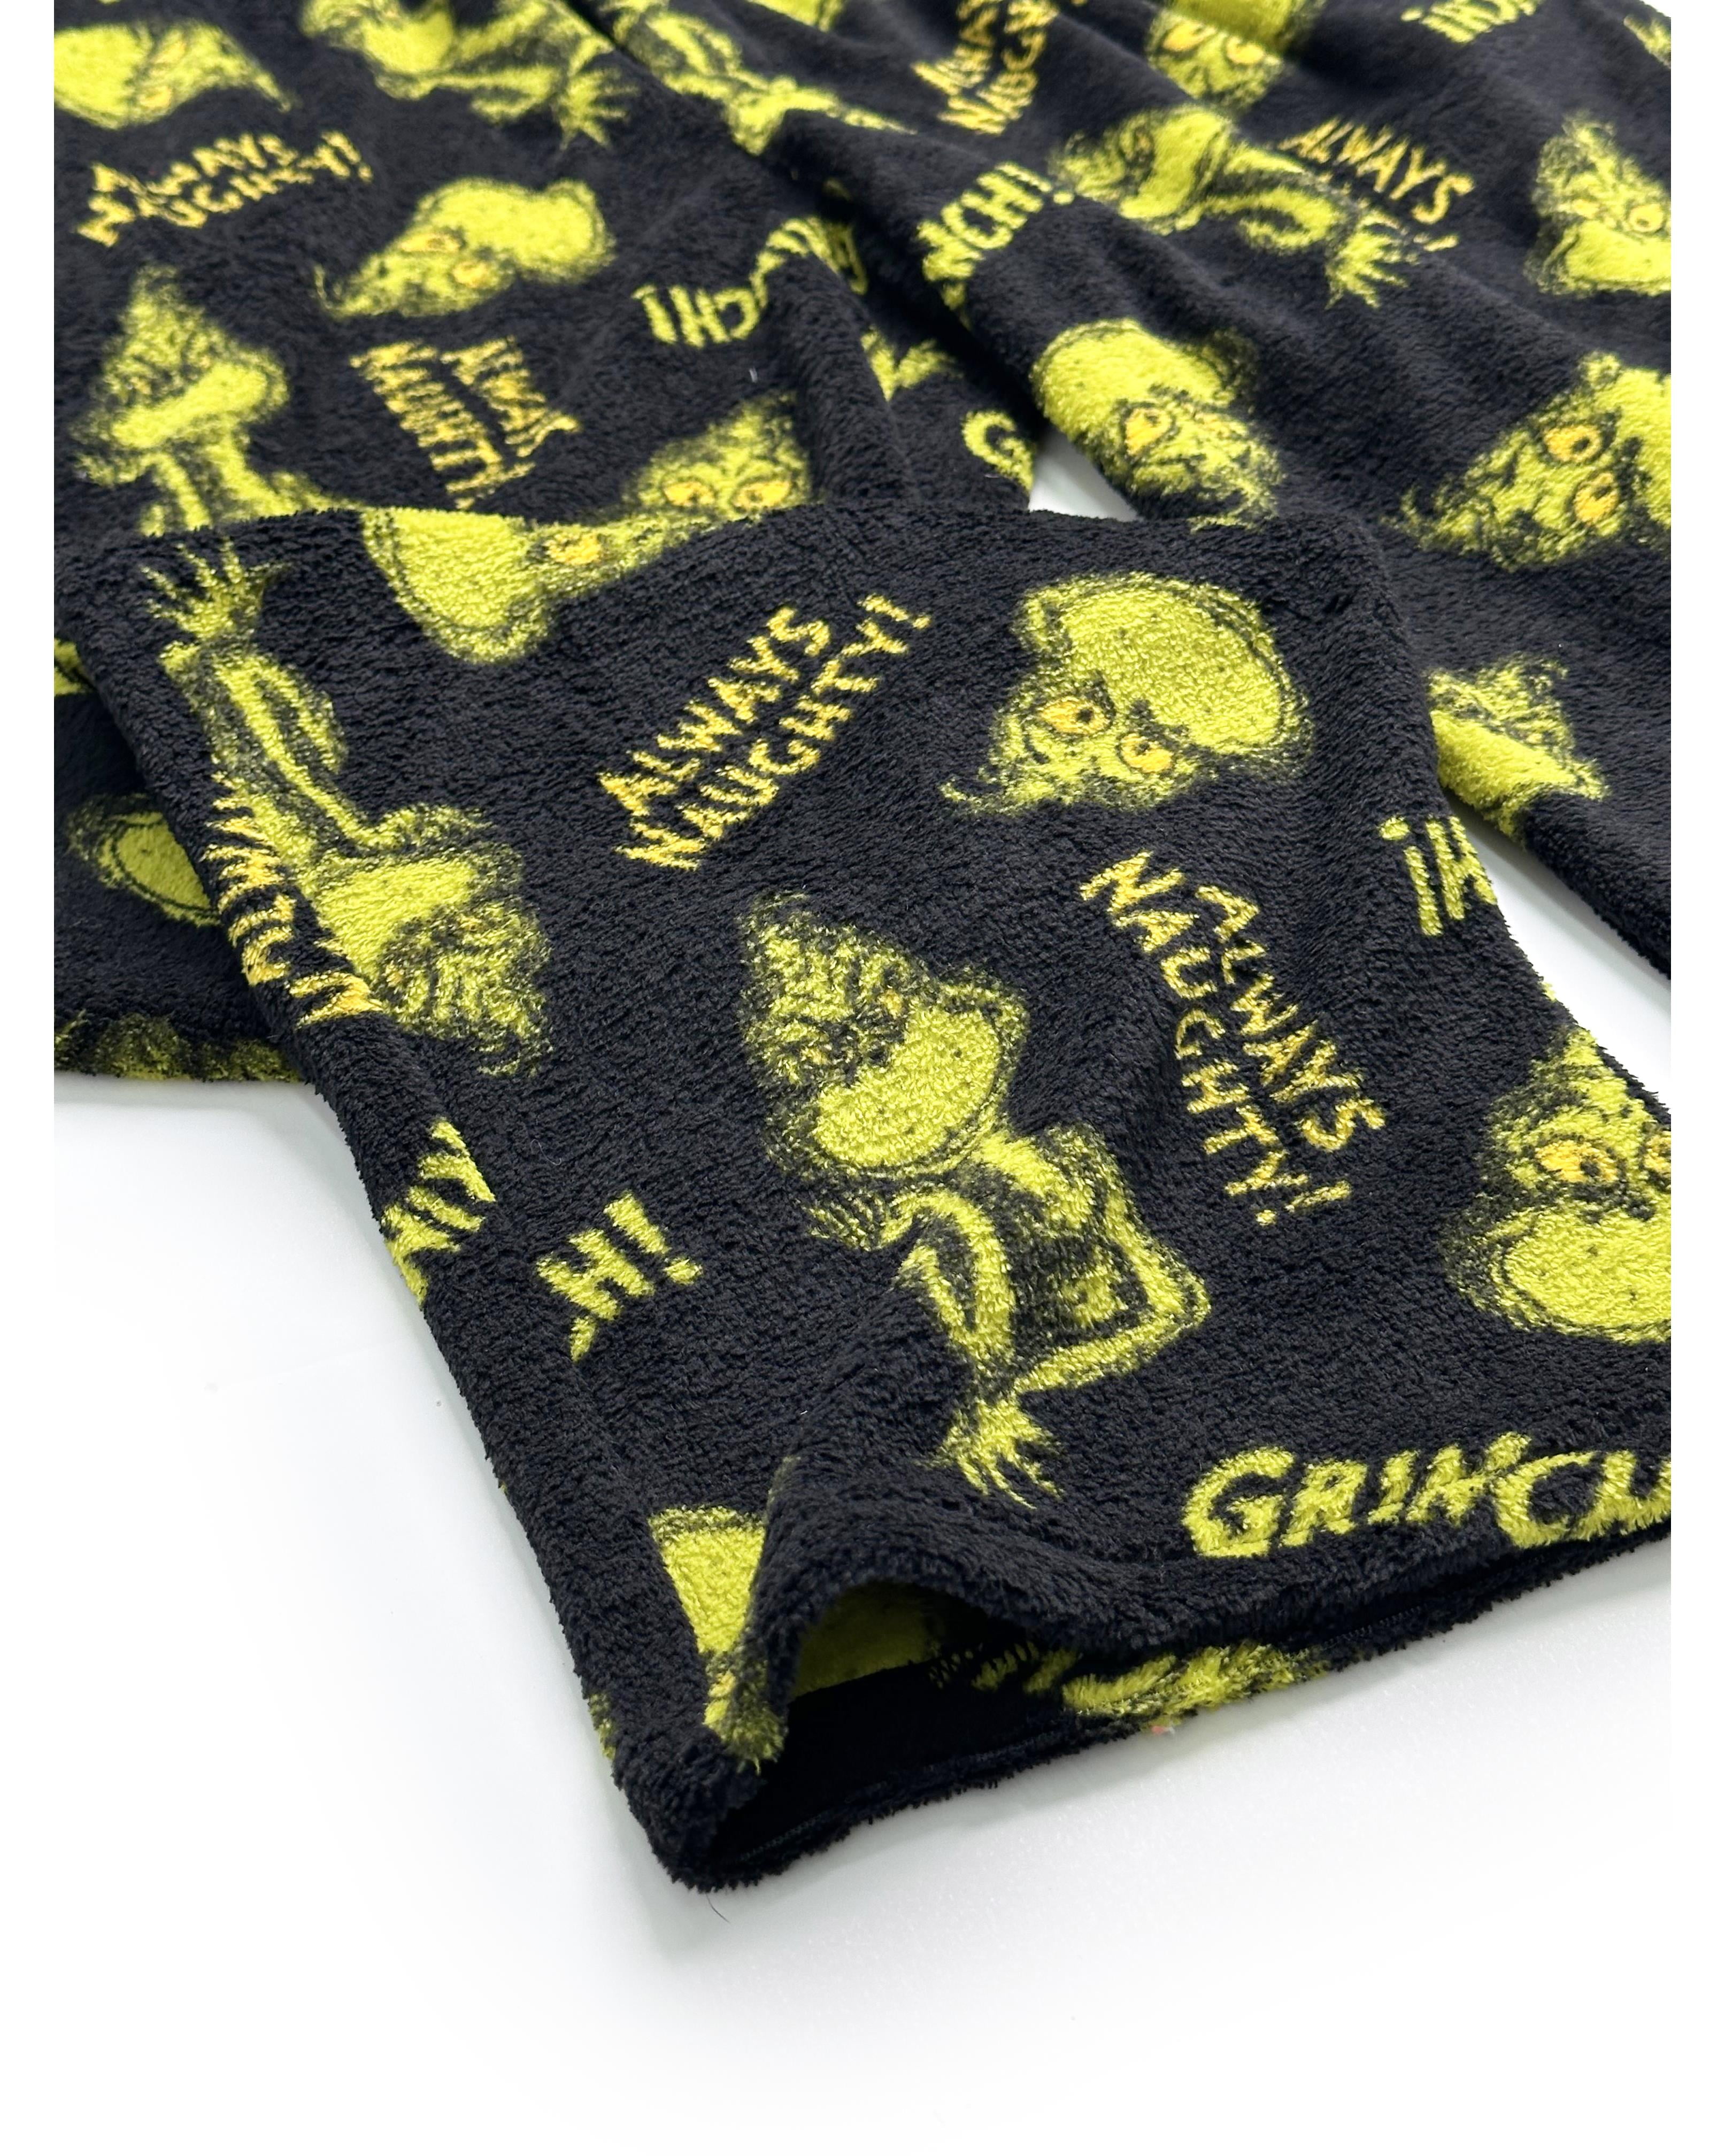 The Grinch Mens Warm Plush Cozy Pajama Pants, Grinch, Size: M, Dr. Seuss 